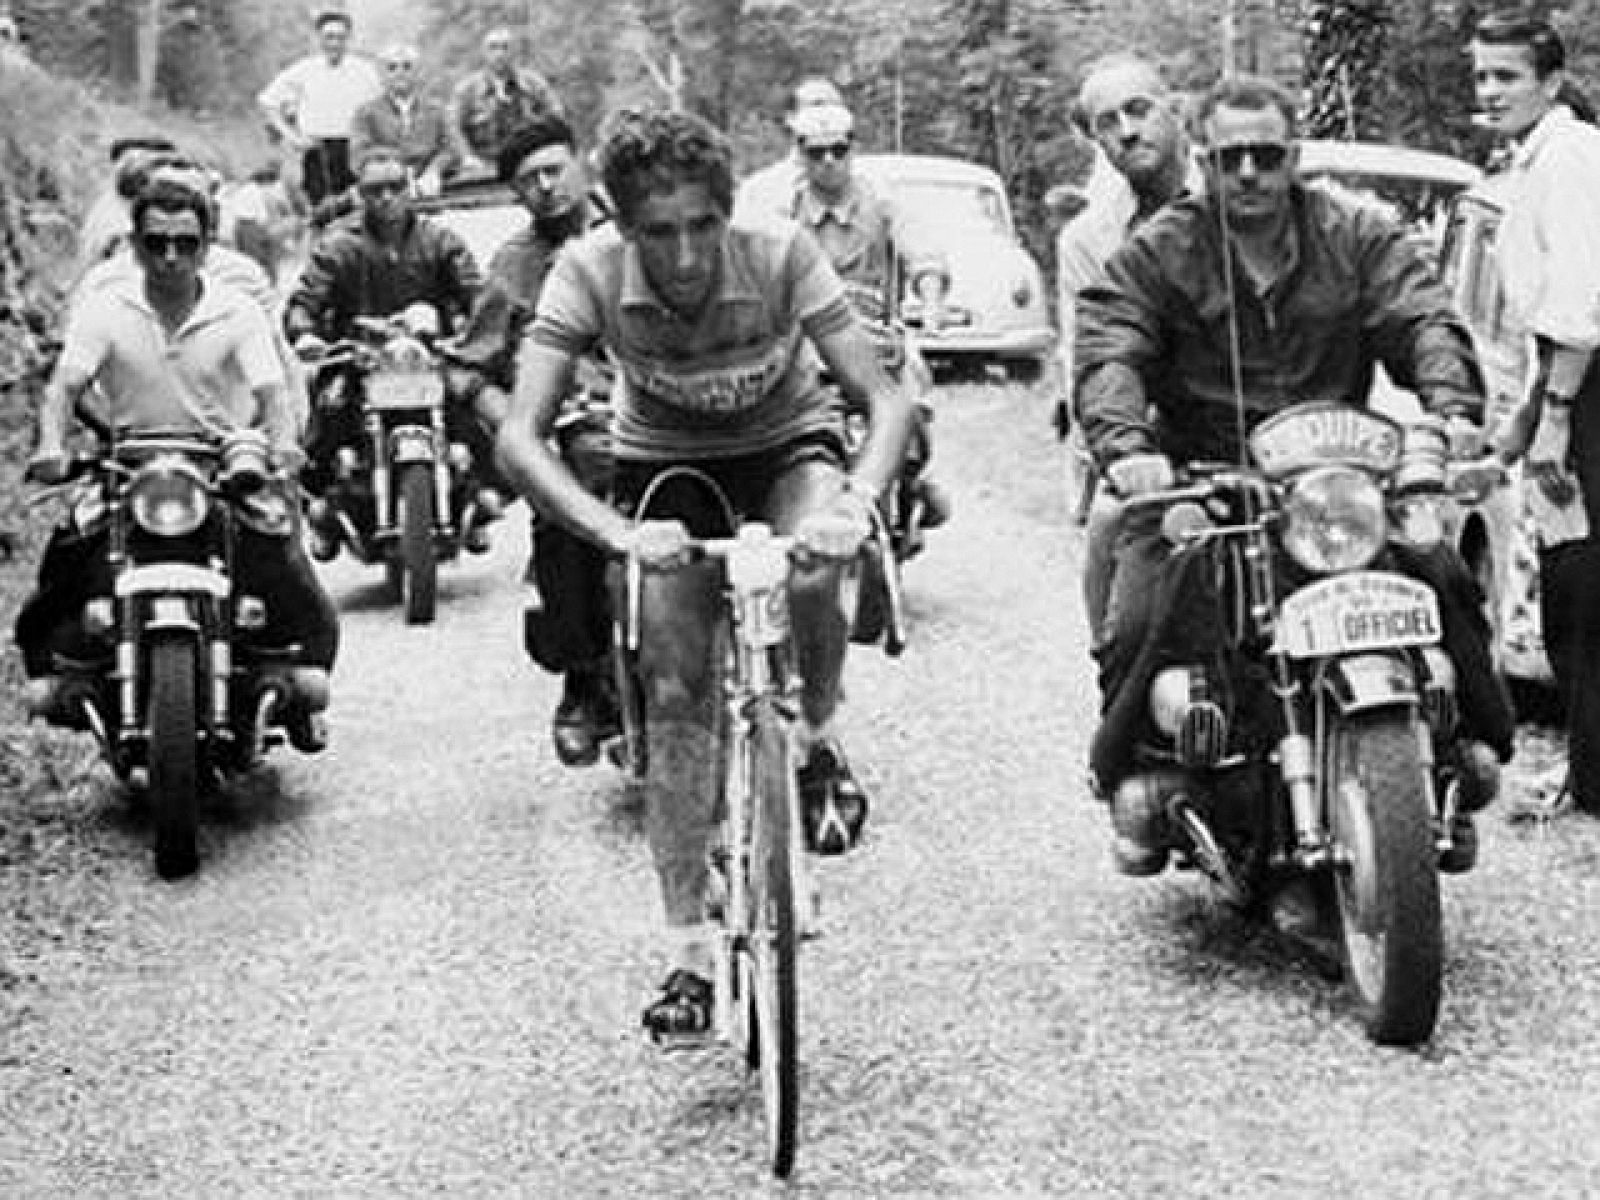 Bahamontes venció en el Tour de Francia 1959, aunque inicialmente no partía como favorito. Sin embargo, una larga escapada en los Pirineos  y su victoria en la cronoescalada de Puy-de-Dôme  le supusieron una importante ventaja. En los Alpes, se asoci